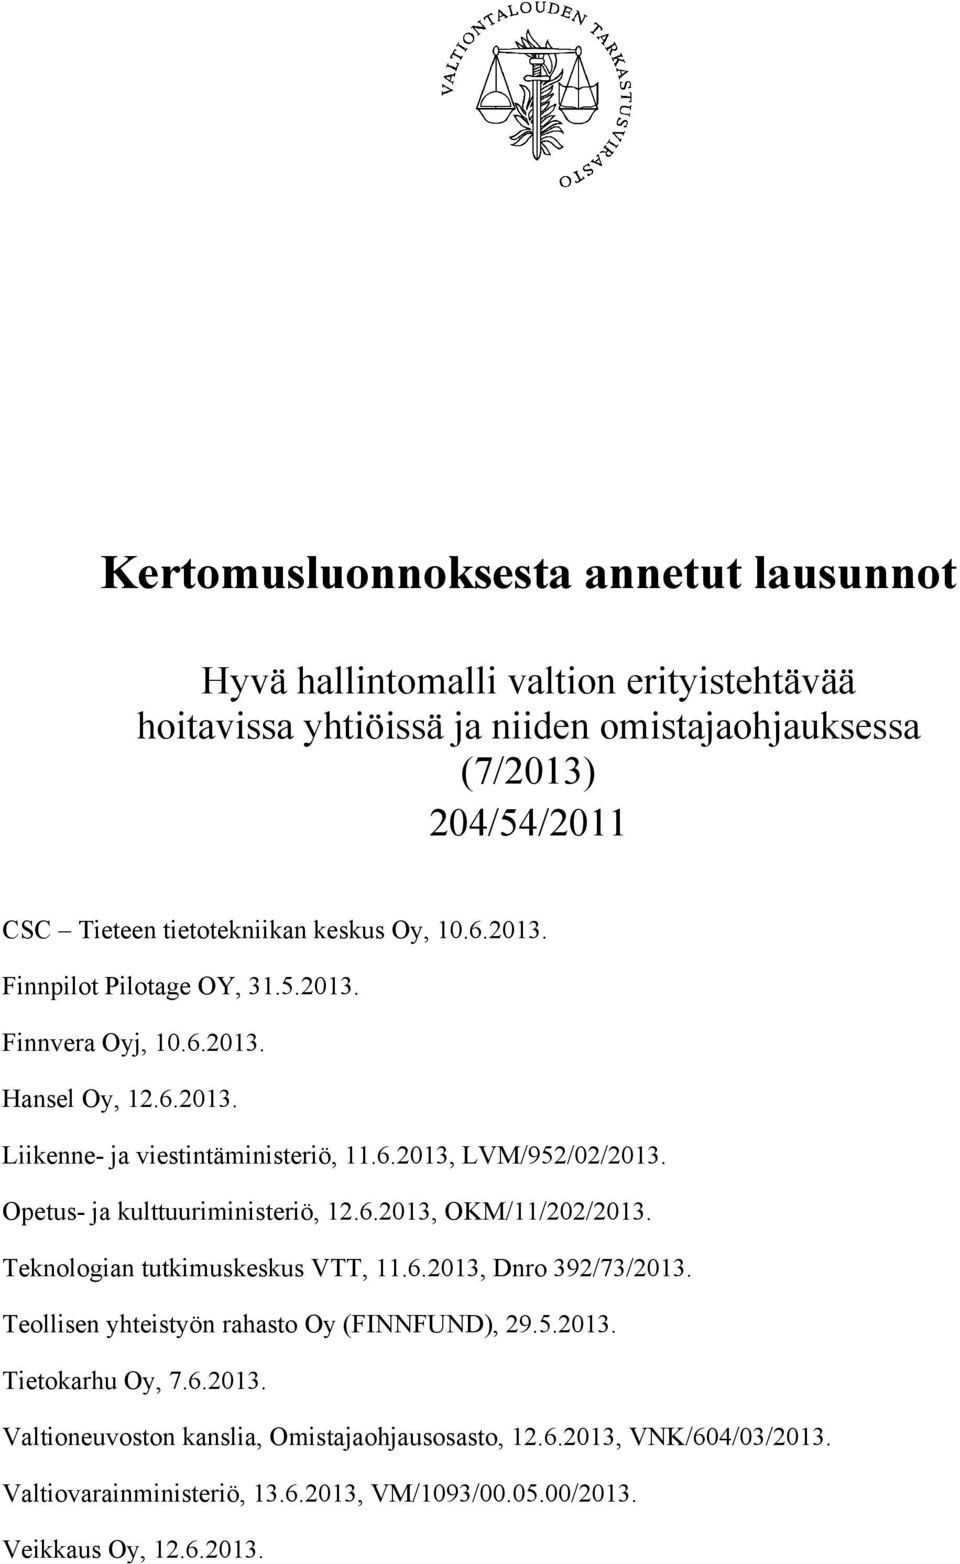 Opetus- ja kulttuuriministeriö, 12.6.2013, OKM/11/202/2013. Teknologian tutkimuskeskus VTT, 11.6.2013, Dnro 392/73/2013. Teollisen yhteistyön rahasto Oy (FINNFUND), 29.5.2013. Tietokarhu Oy, 7.